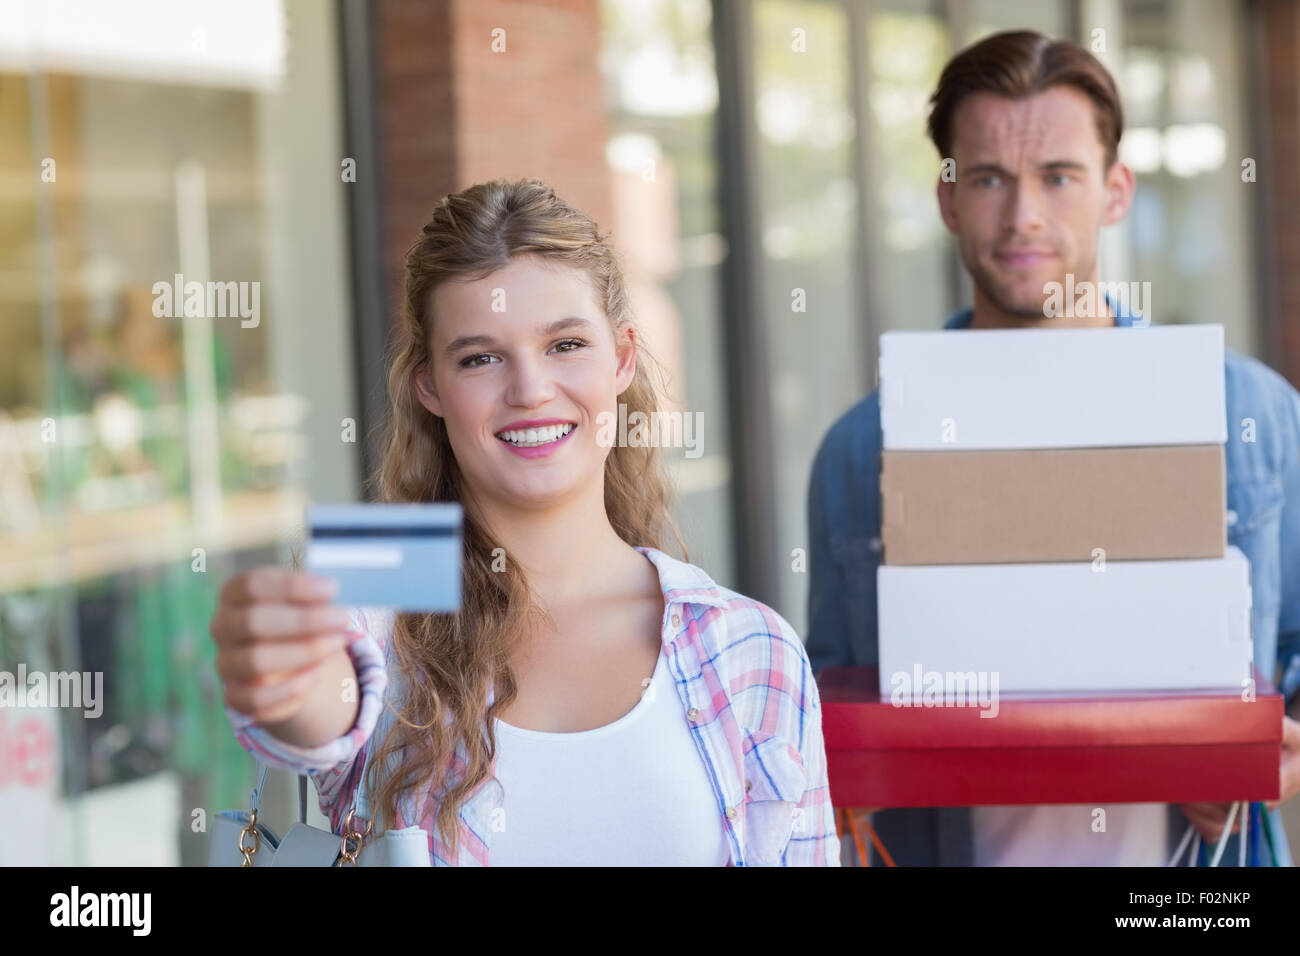 Portrait d'un couple heureux montrant leur nouvelle carte de crédit Banque D'Images